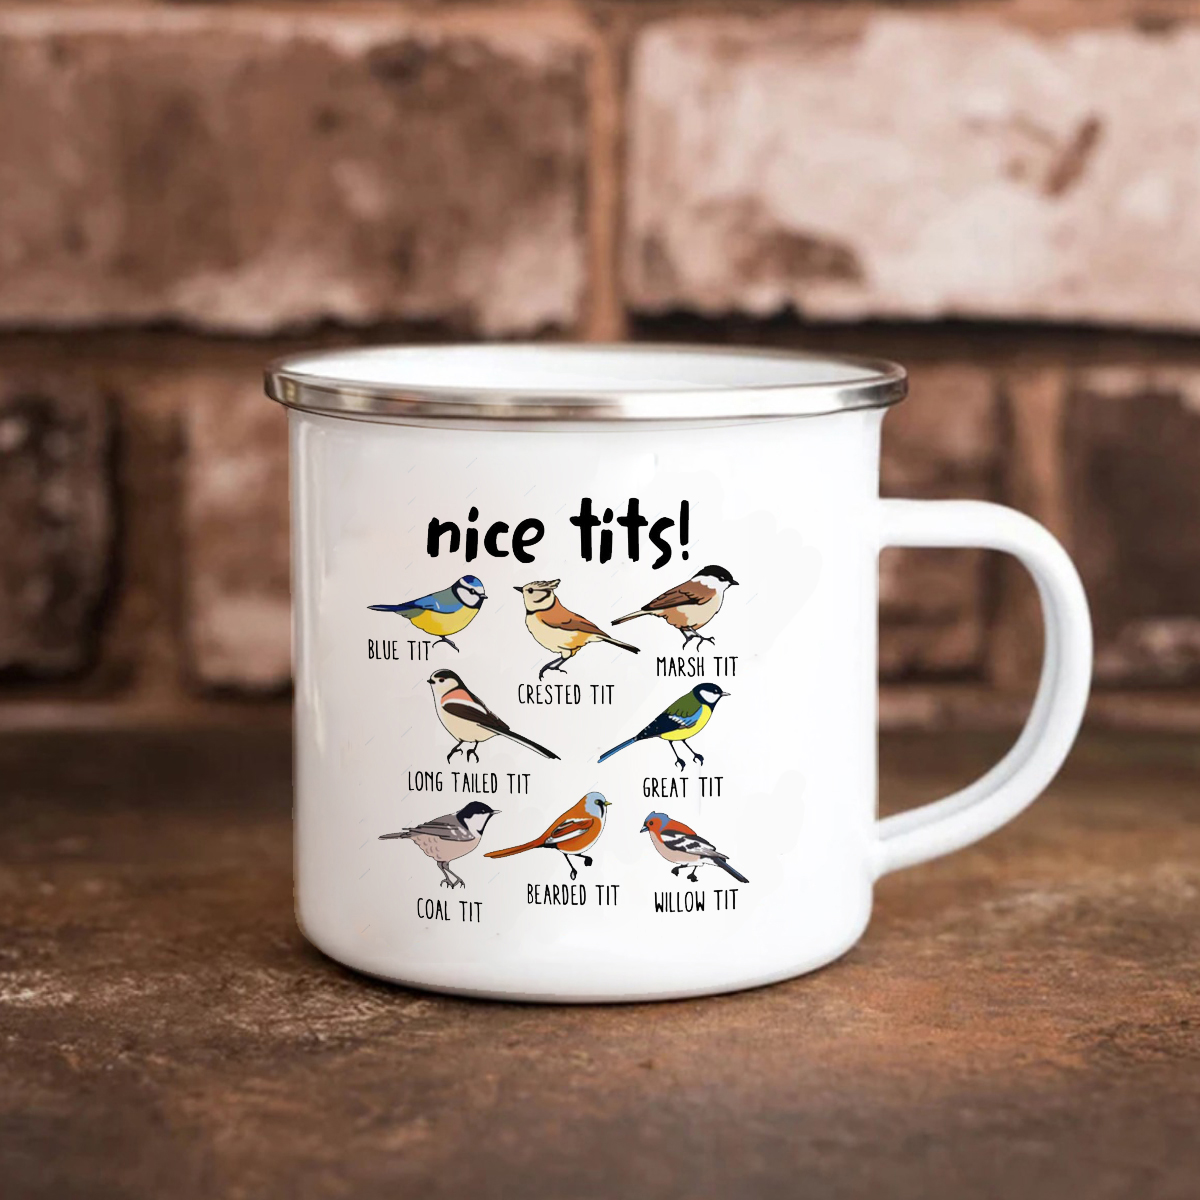 nice tits 山雀小鸟搪瓷马克杯 摄影绘画爱好者居家喝水杯子礼物